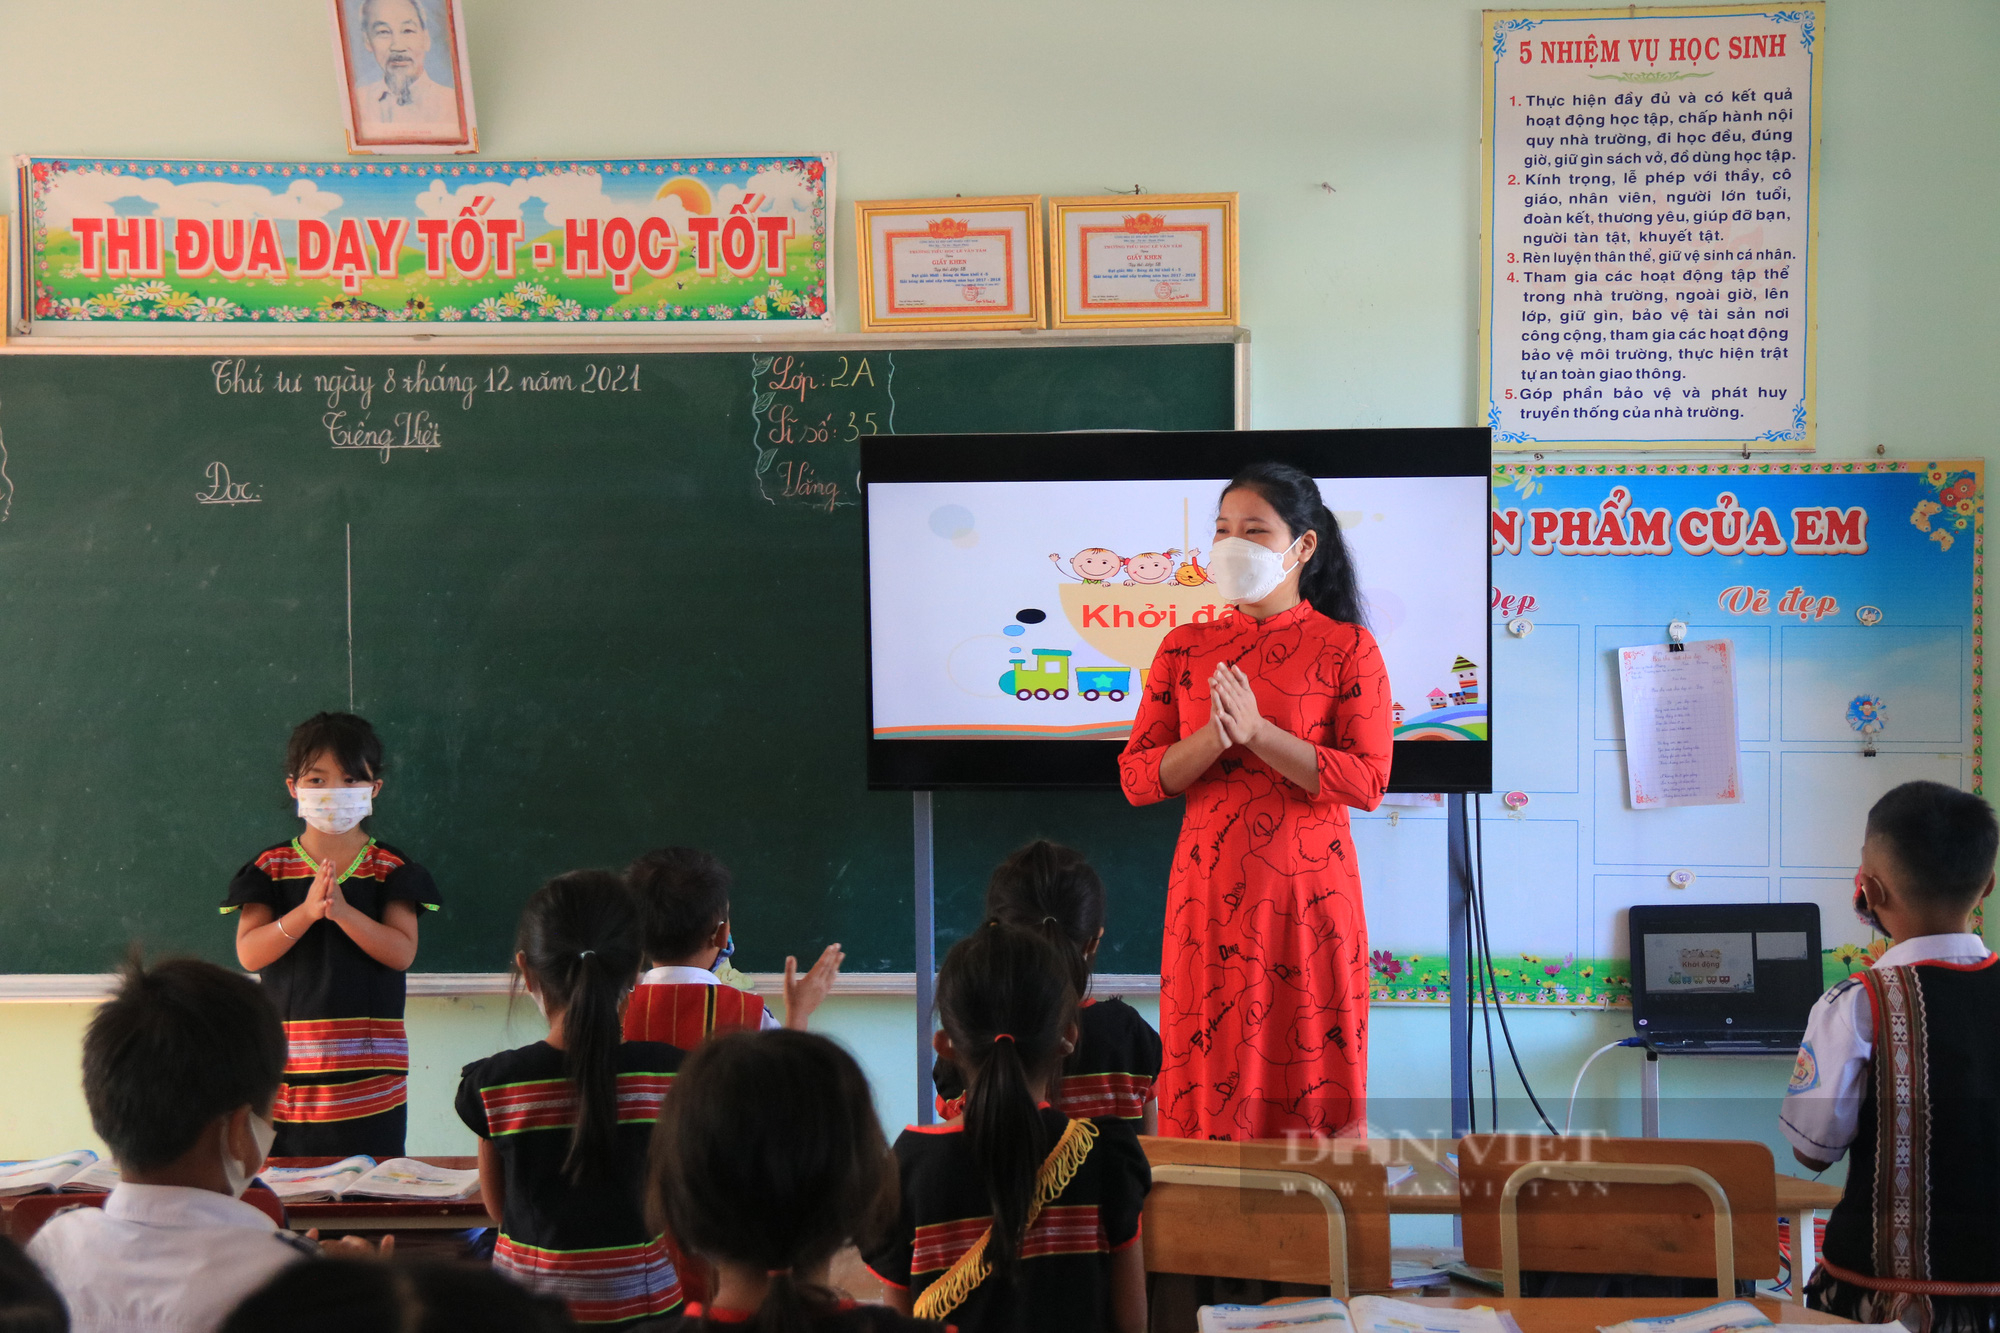 Gói thầu trang thiết bị dạy học ở Kon Tum cao hơn thị trường: UBND tỉnh kiến nghị kiểm toán vào cuộc - Ảnh 1.